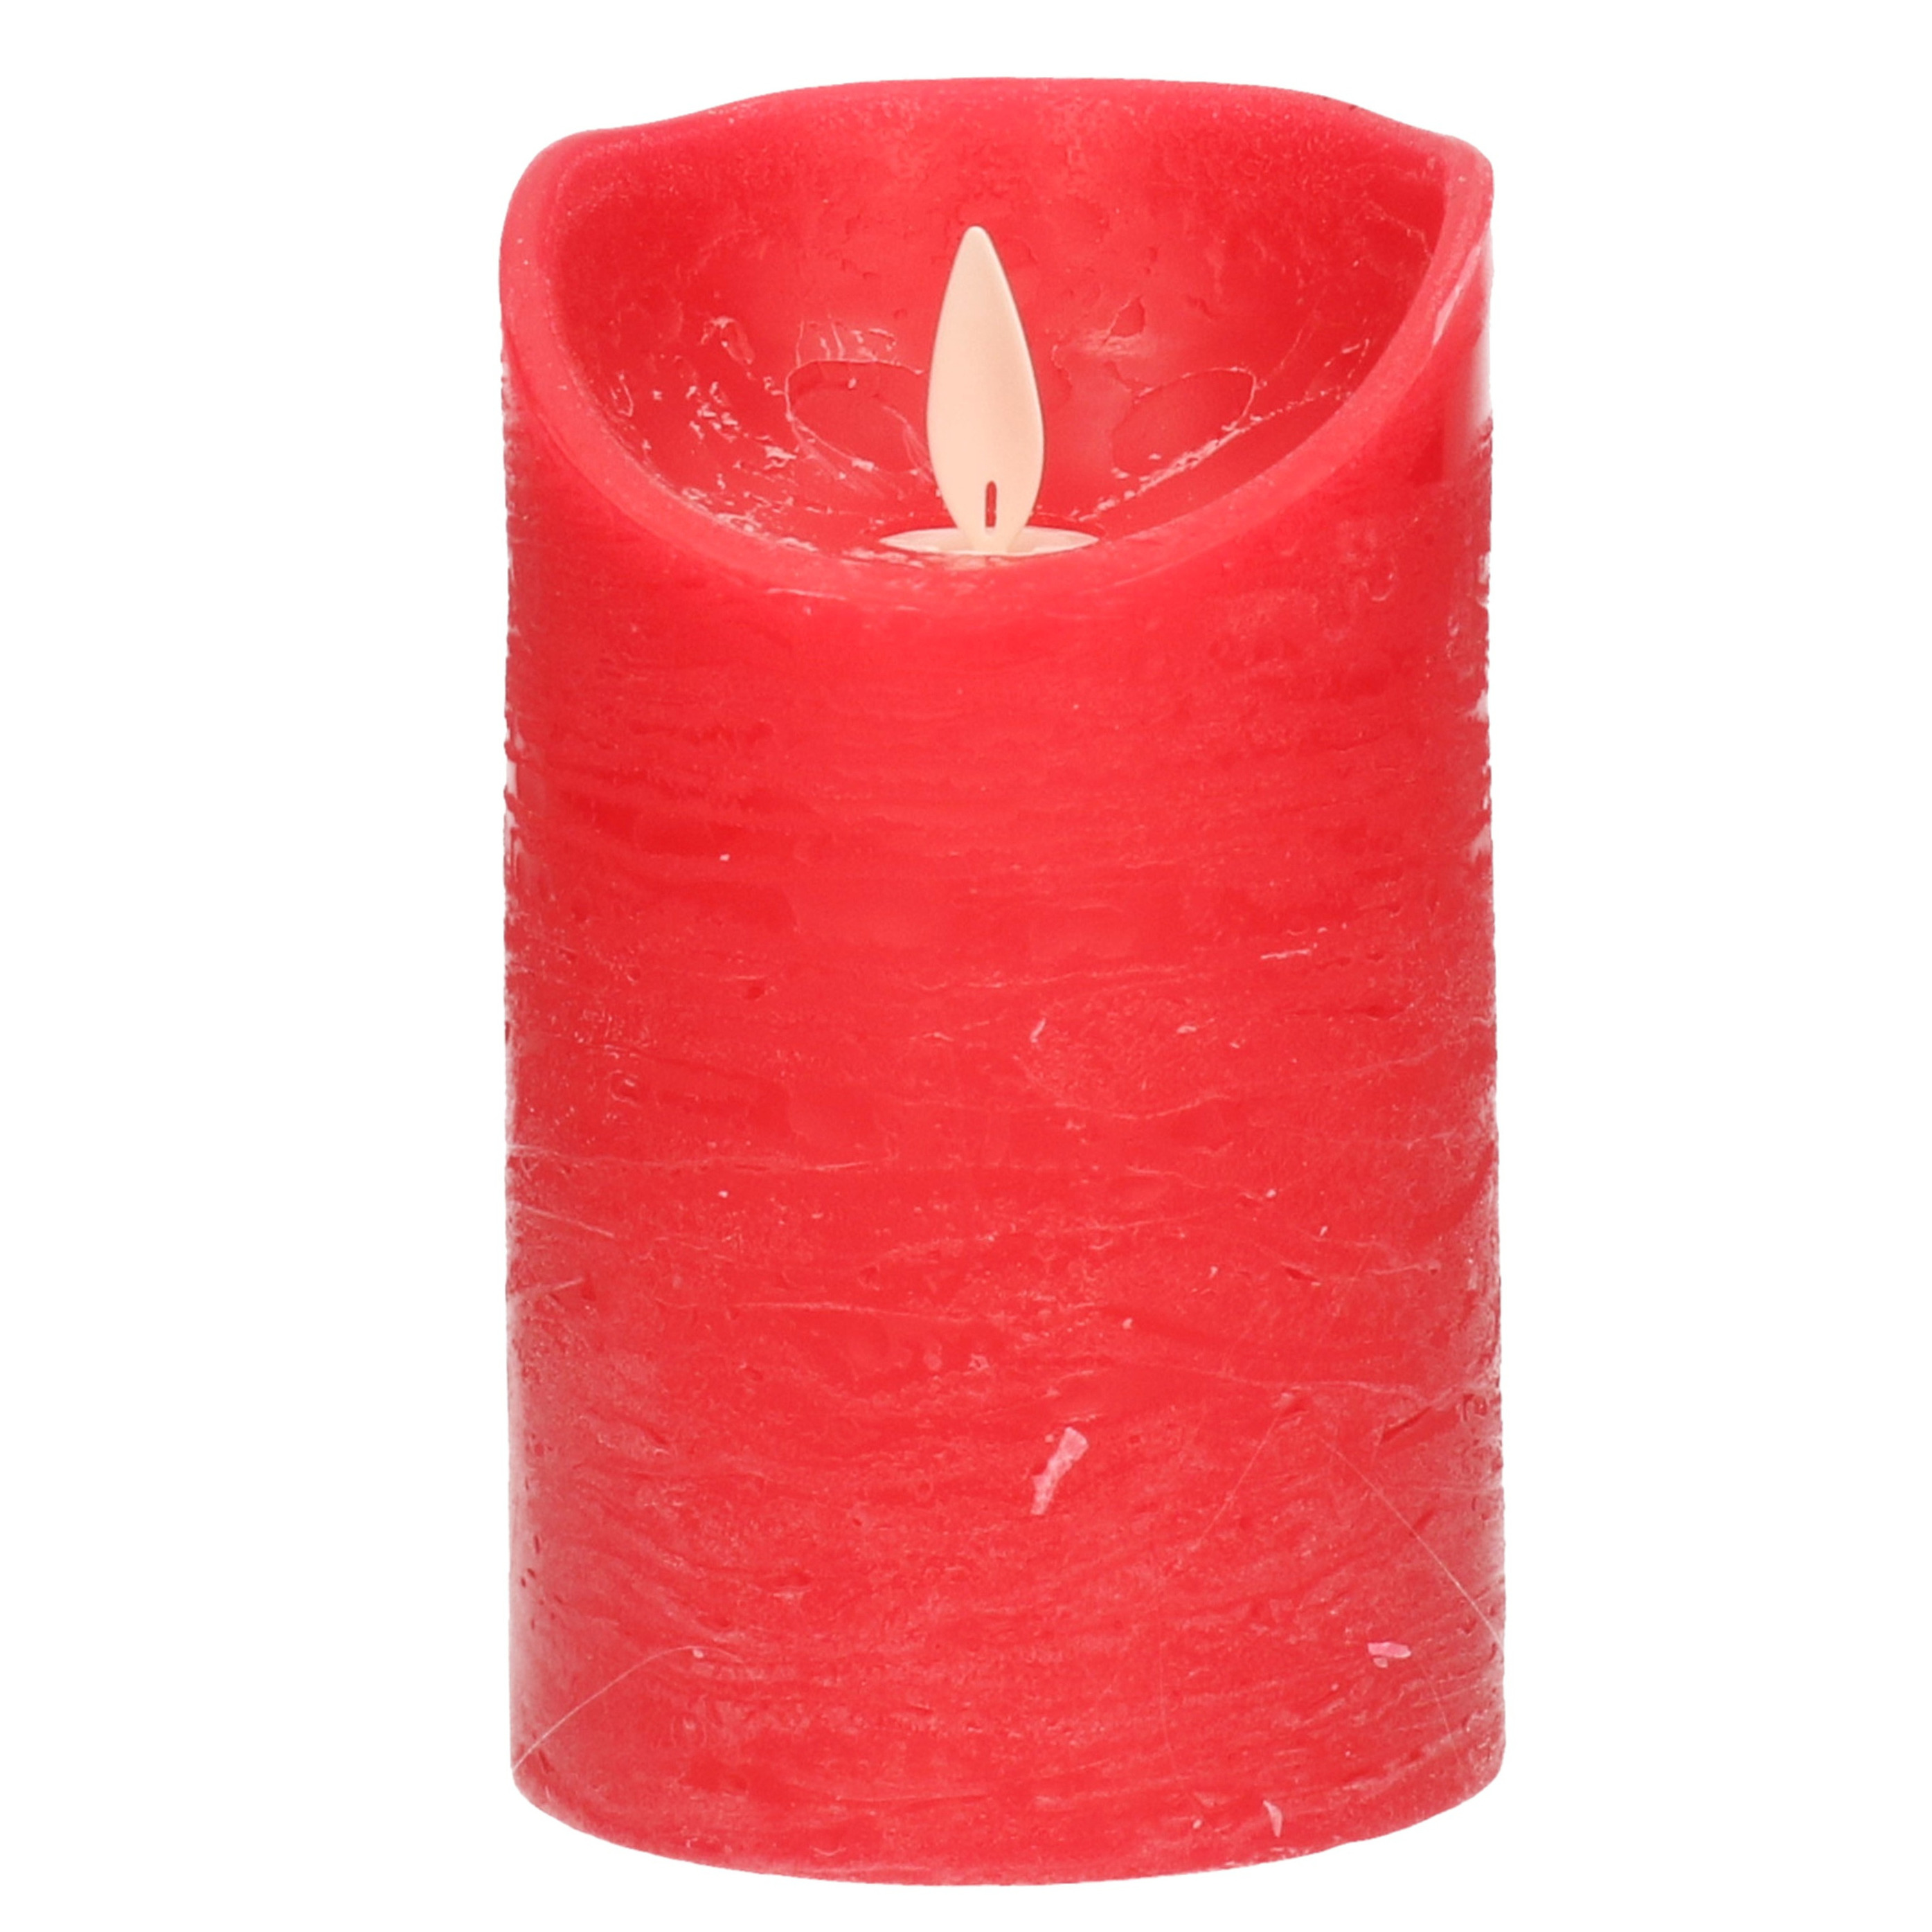 1x Rode LED kaarsen-stompkaarsen met bewegende vlam 12,5 cm